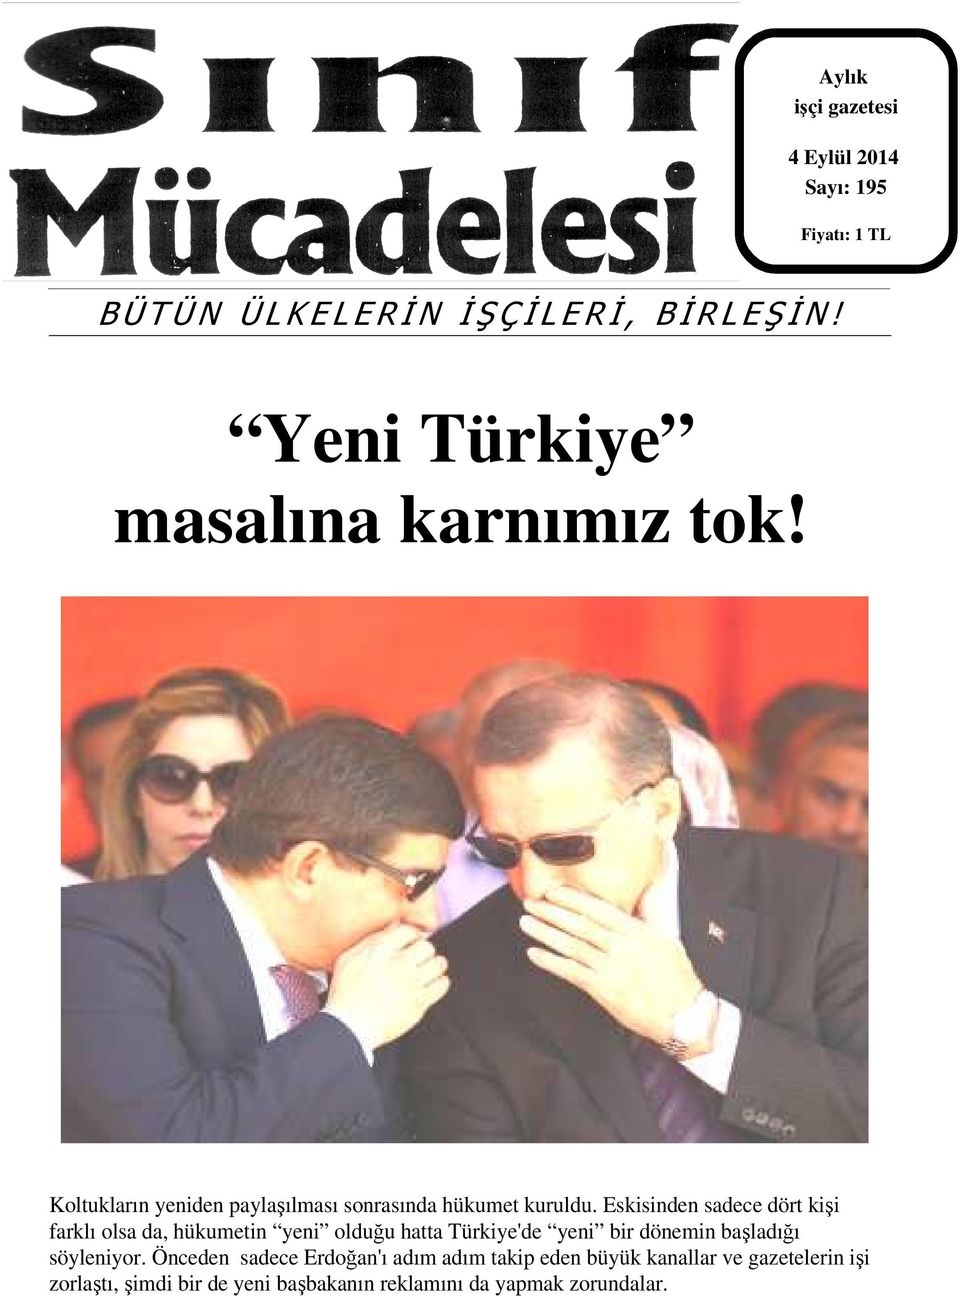 Eskisinden sadece dört kişi farklı olsa da, hükumetin yeni olduğu hatta Türkiye'de yeni bir dönemin başladığı söyleniyor.